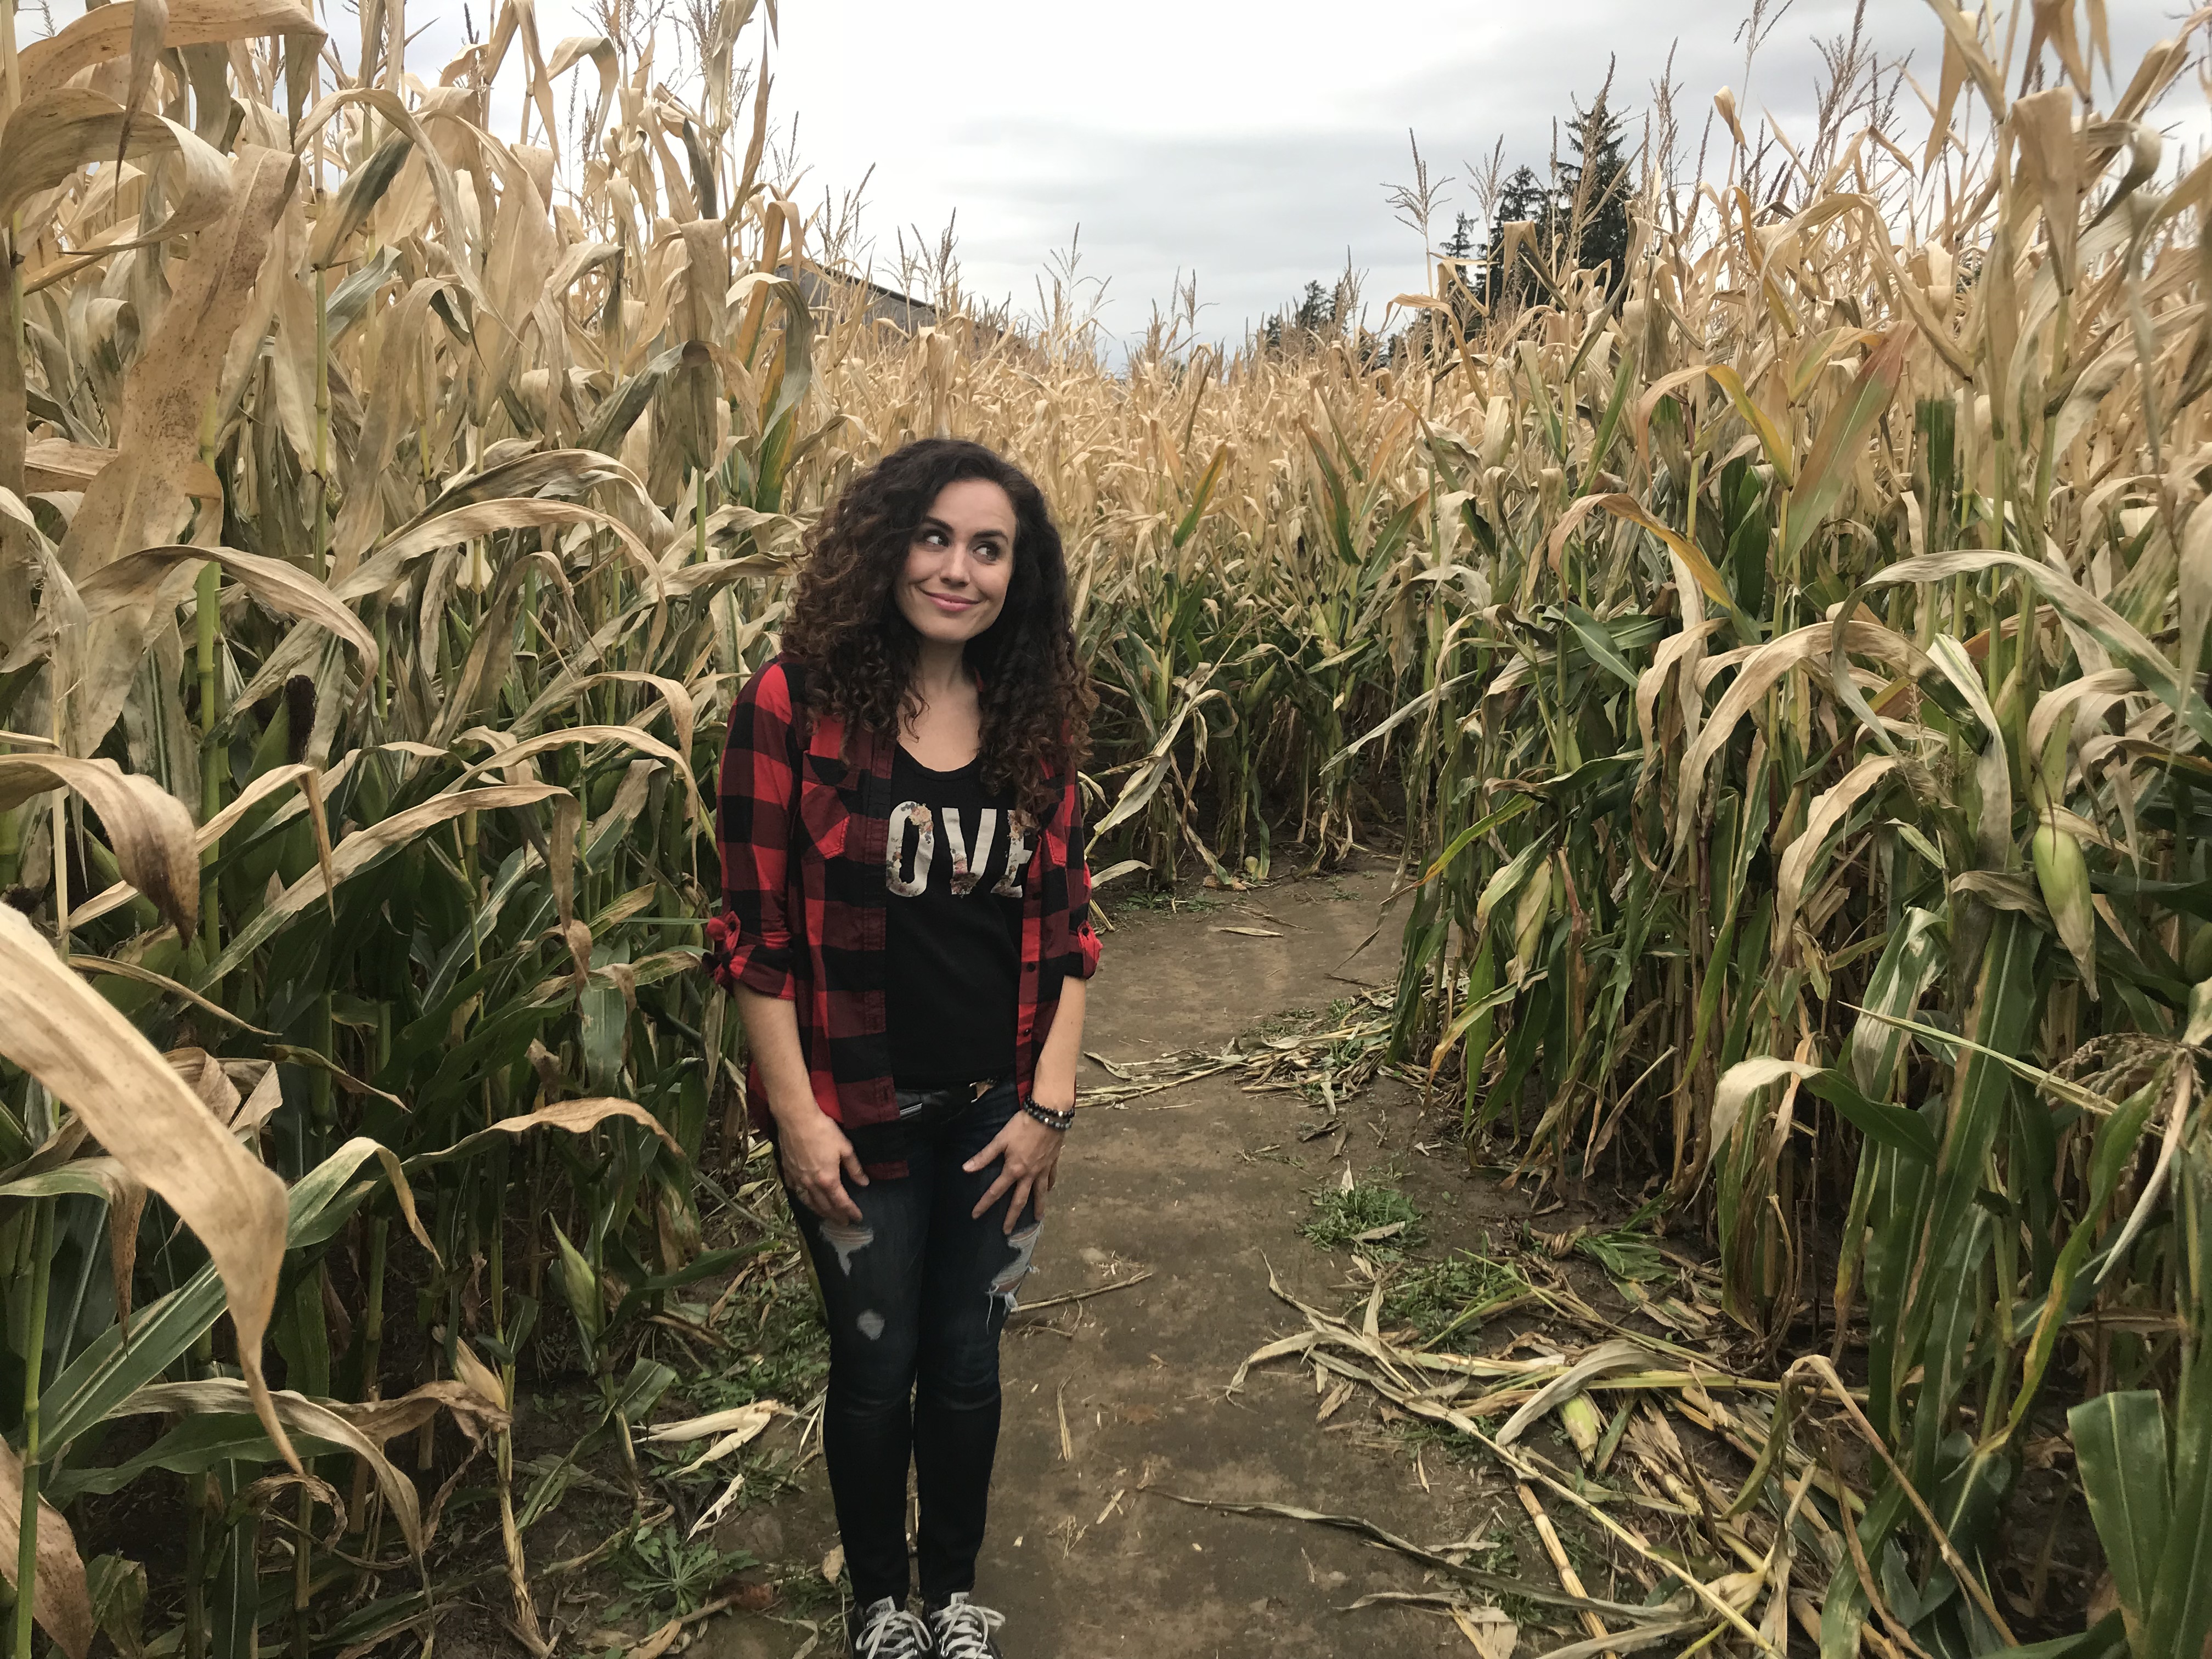 Lost in a corn maze